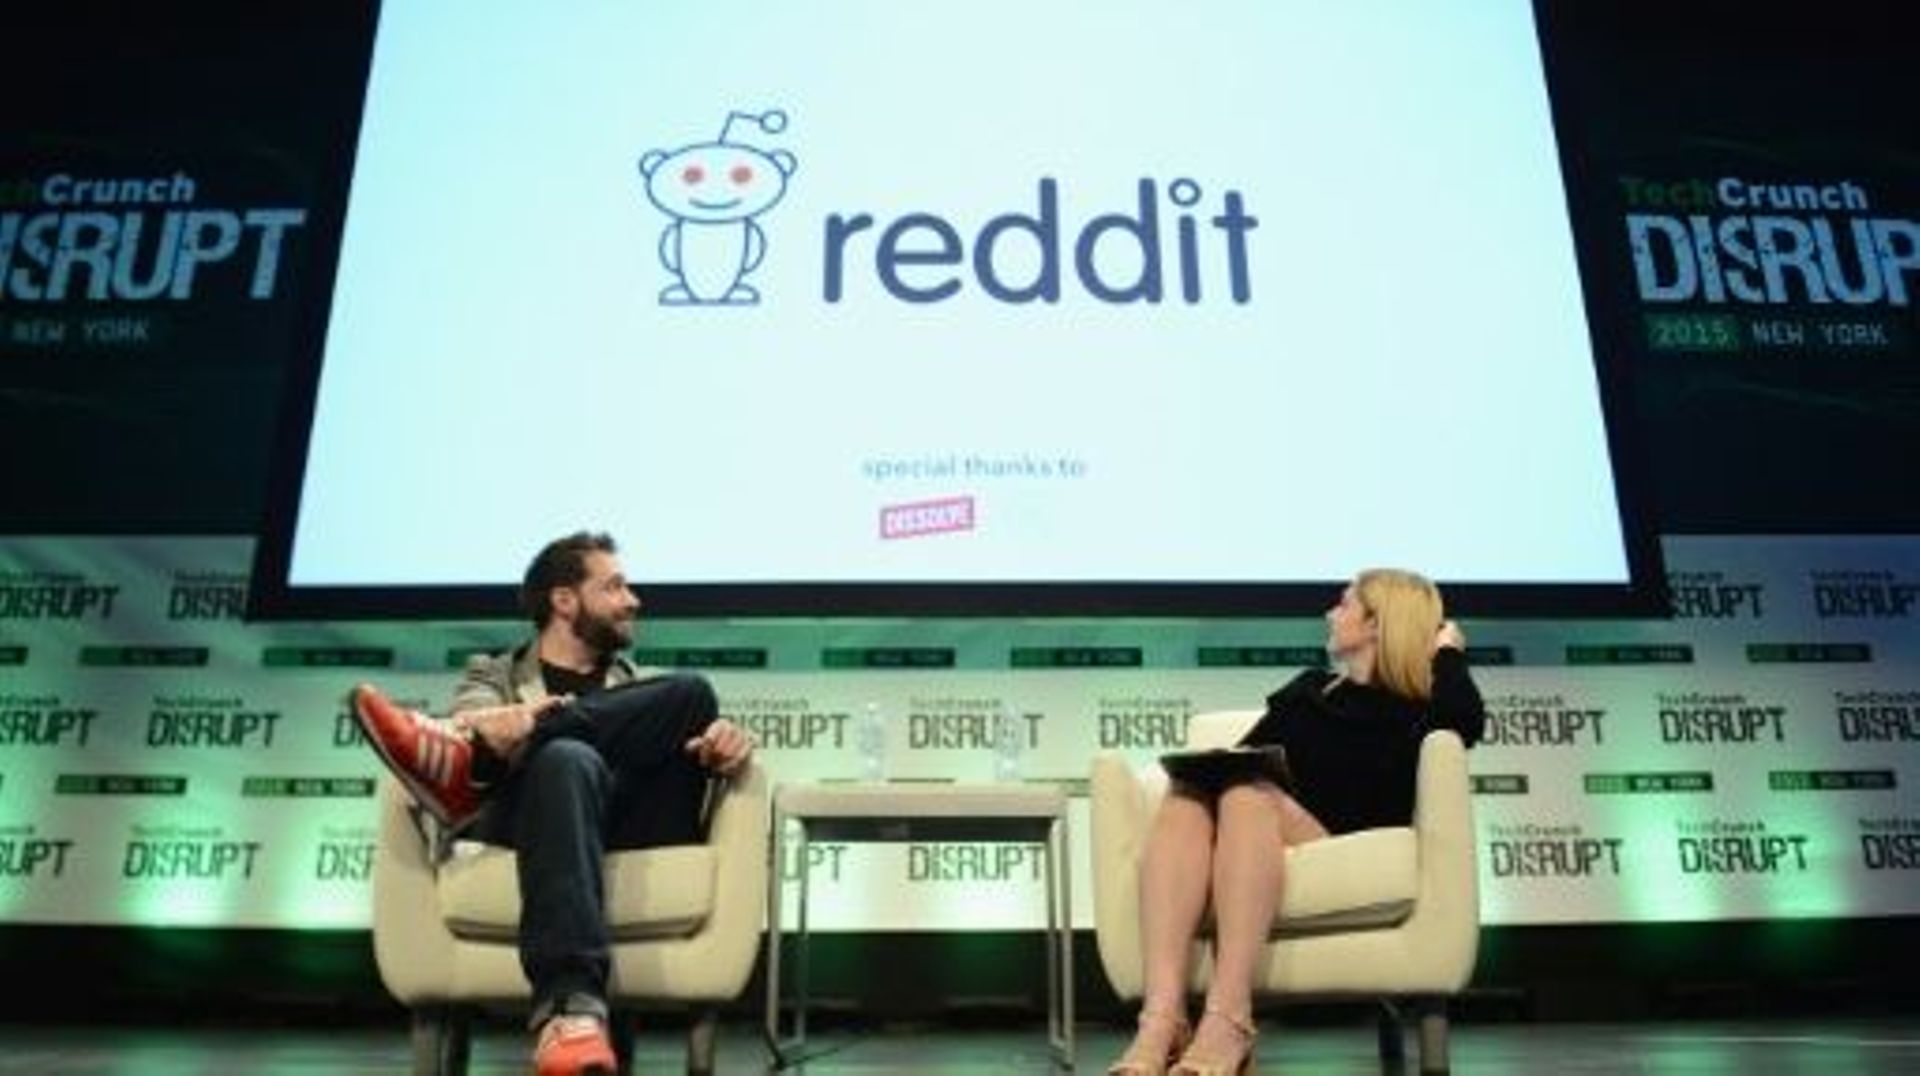 L'un des fondateurs de Reddit, Alexis Ohanian (G), lors d'une présentation à New York, le 6 mai 2015